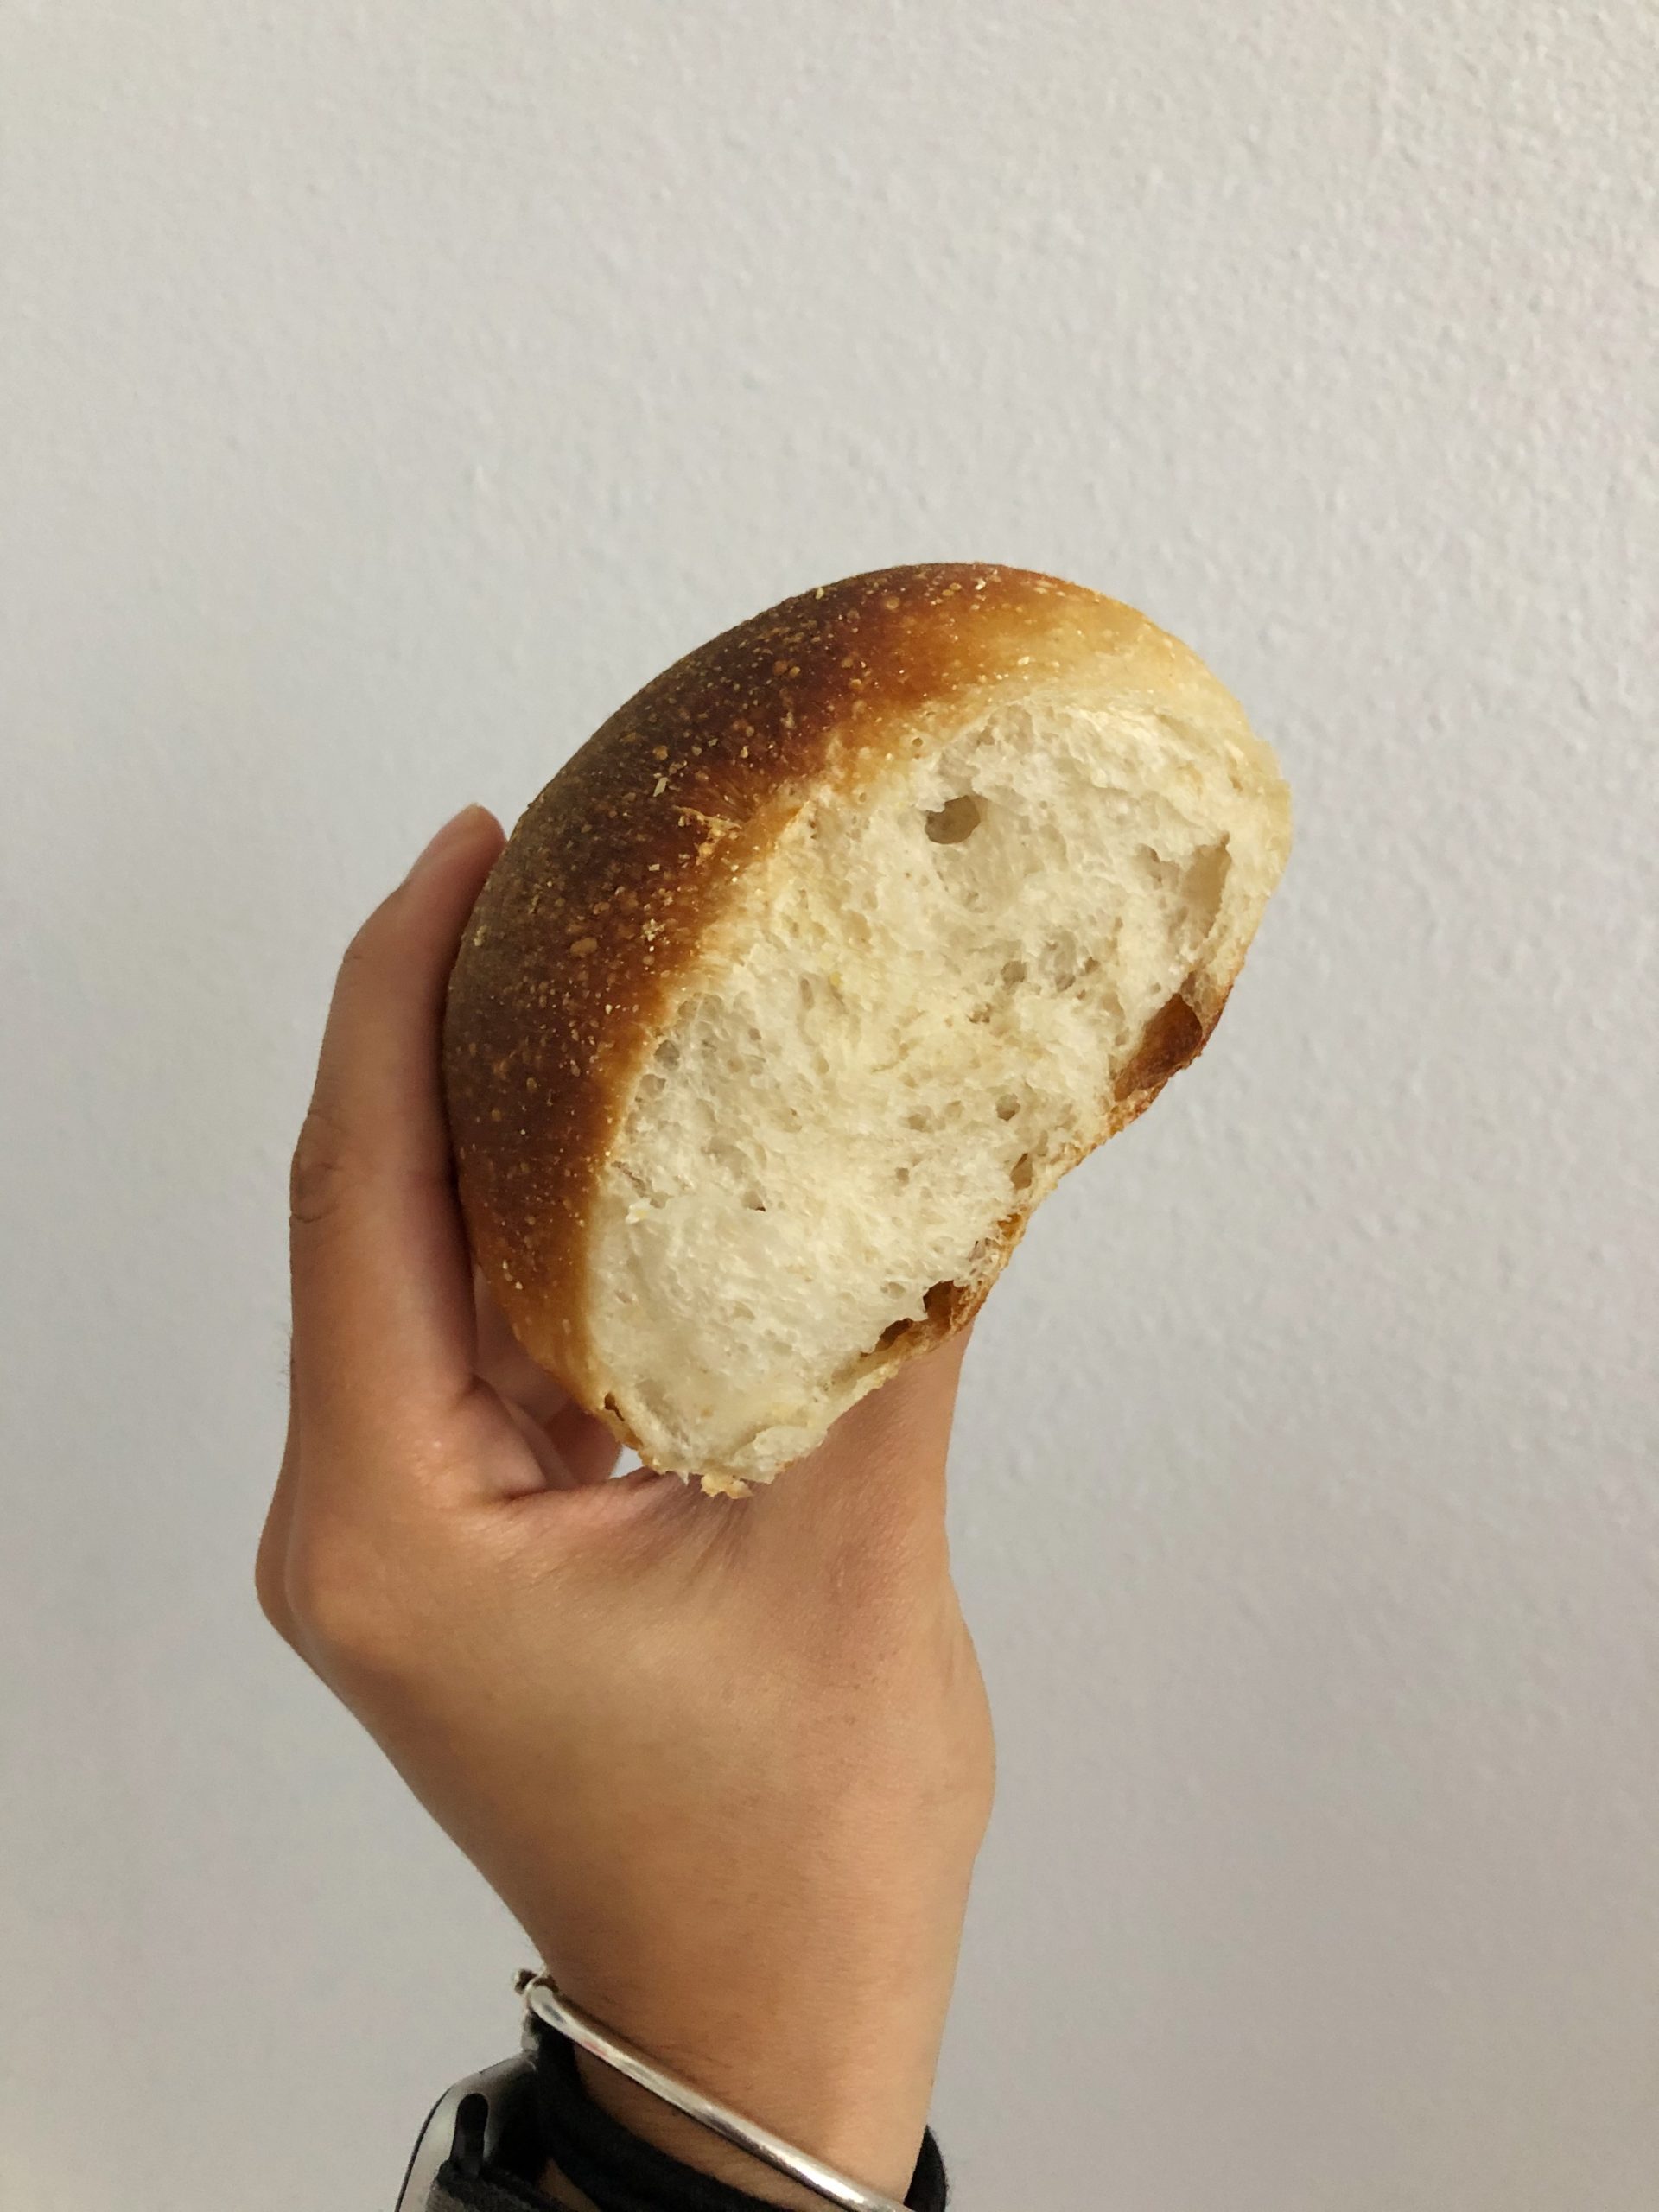 Sourdough bread rolls